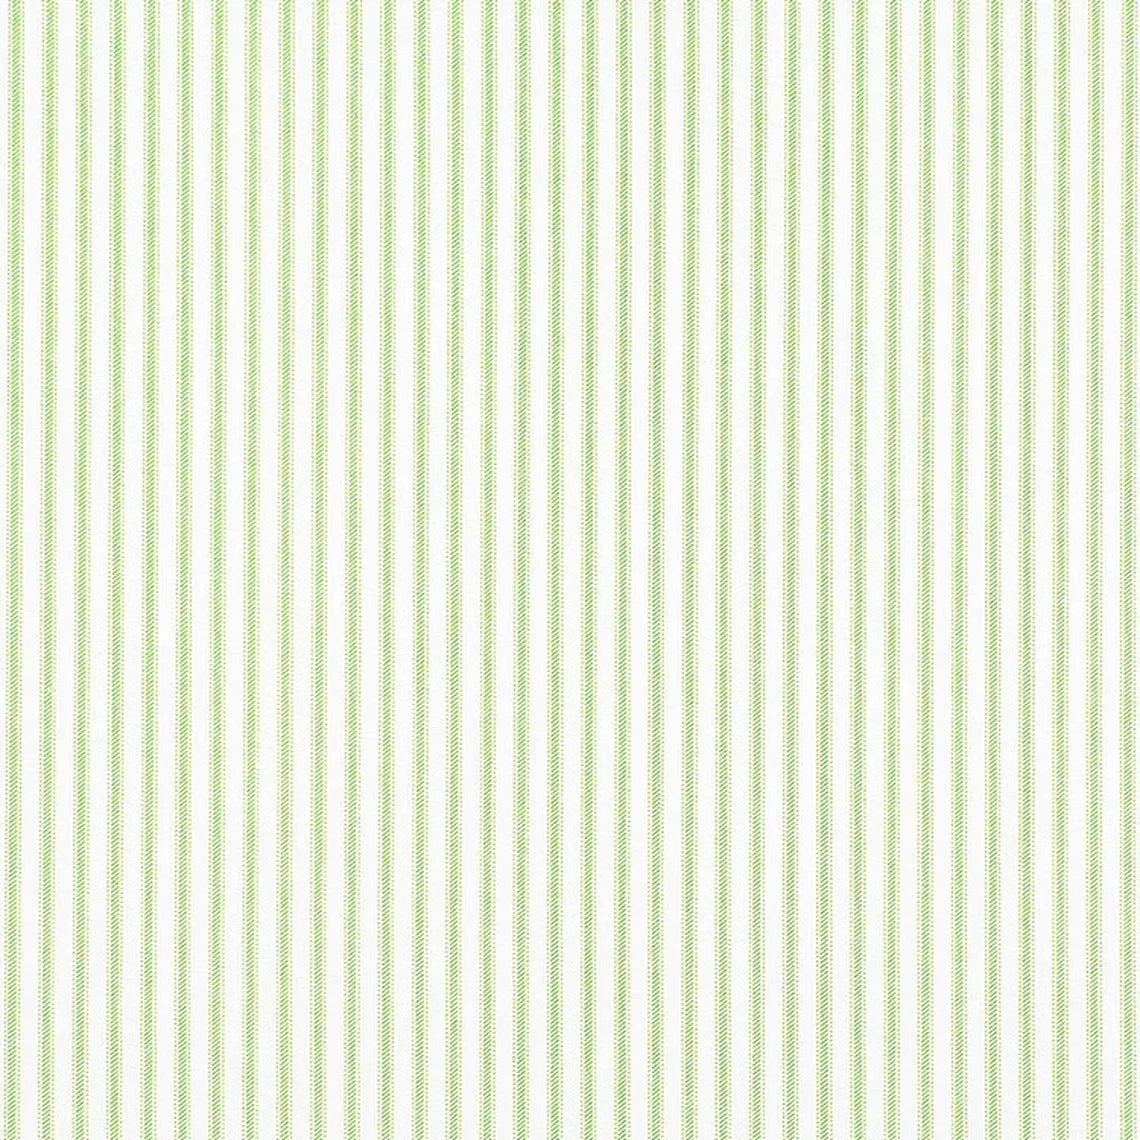 pillow sham in classic kiwi green ticking stripe on white